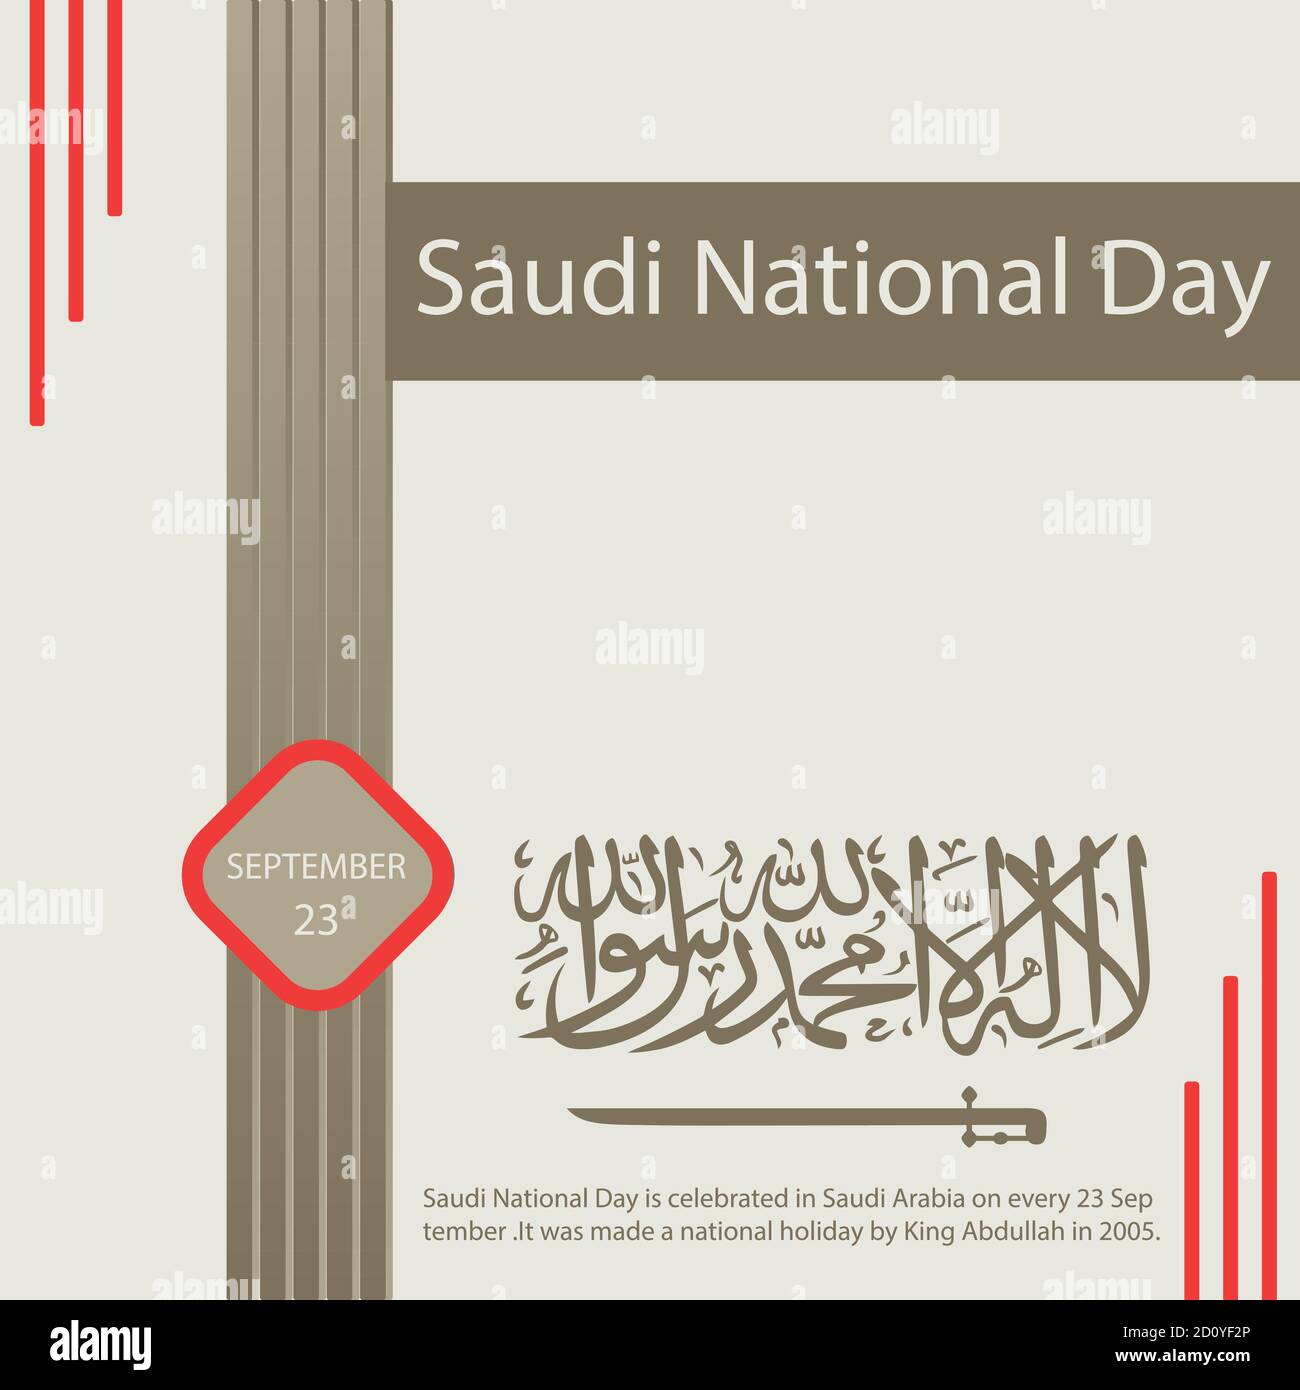 Der Nationalfeiertag Saudi-Arabiens wird in Saudi-Arabien jedes Jahr am 23. September gefeiert.Er wurde 2005 von König Abdullah zum Nationalfeiertag gemacht. Stock Vektor